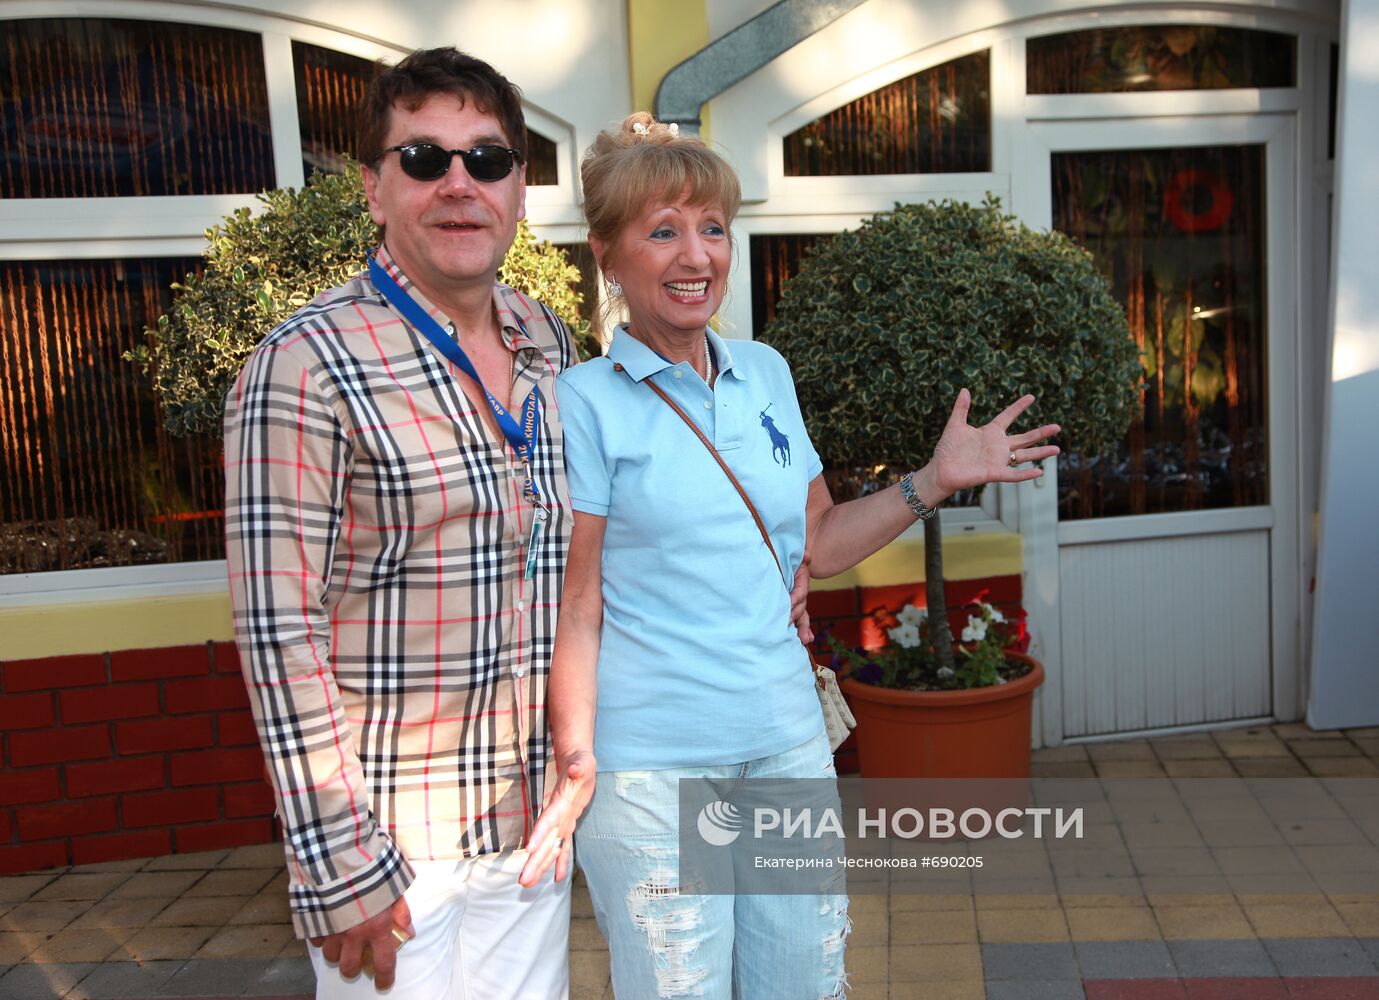 Сергей Маковецкий с супругой Еленой